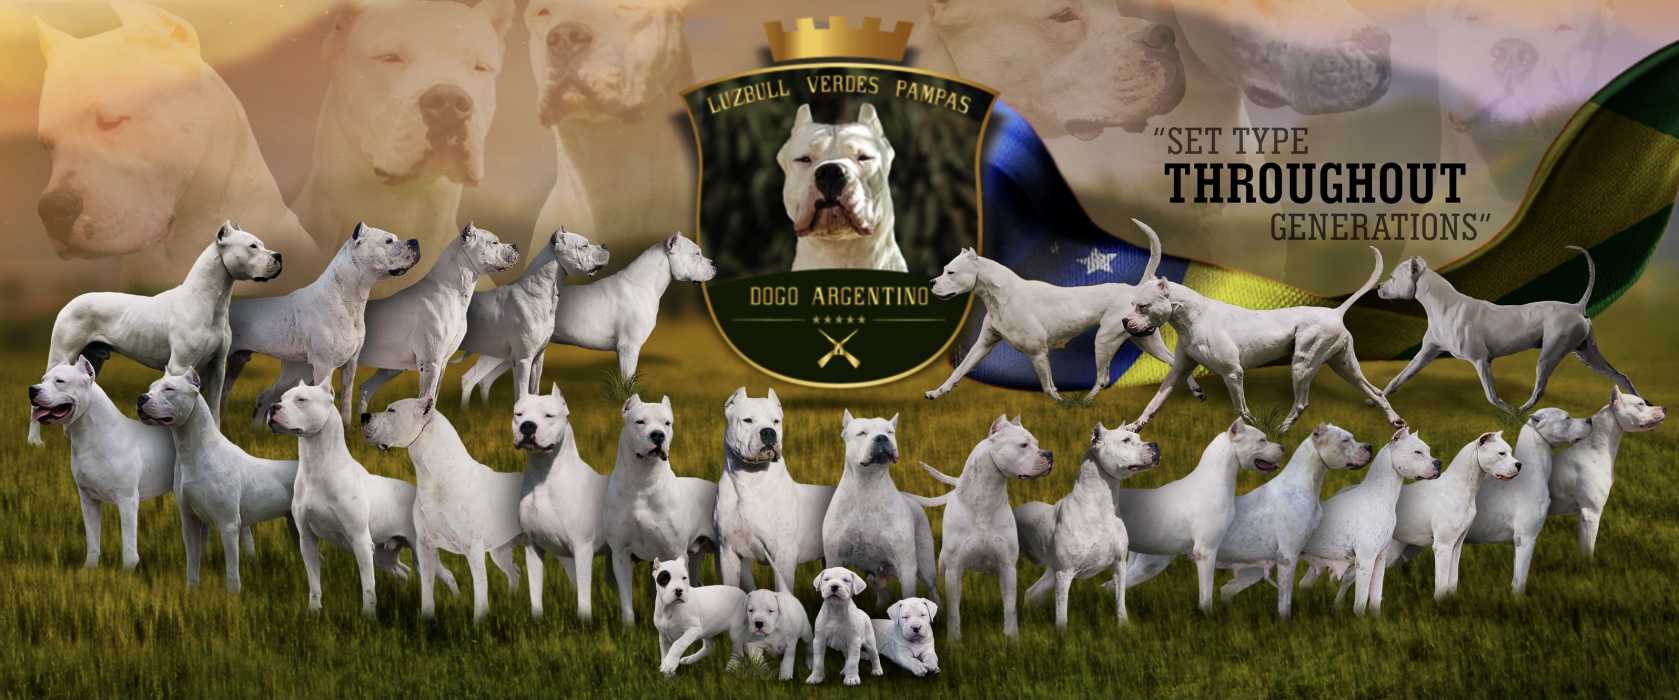 Dogo Argentino: conheça esta raça de cães e as suas caraterísticas